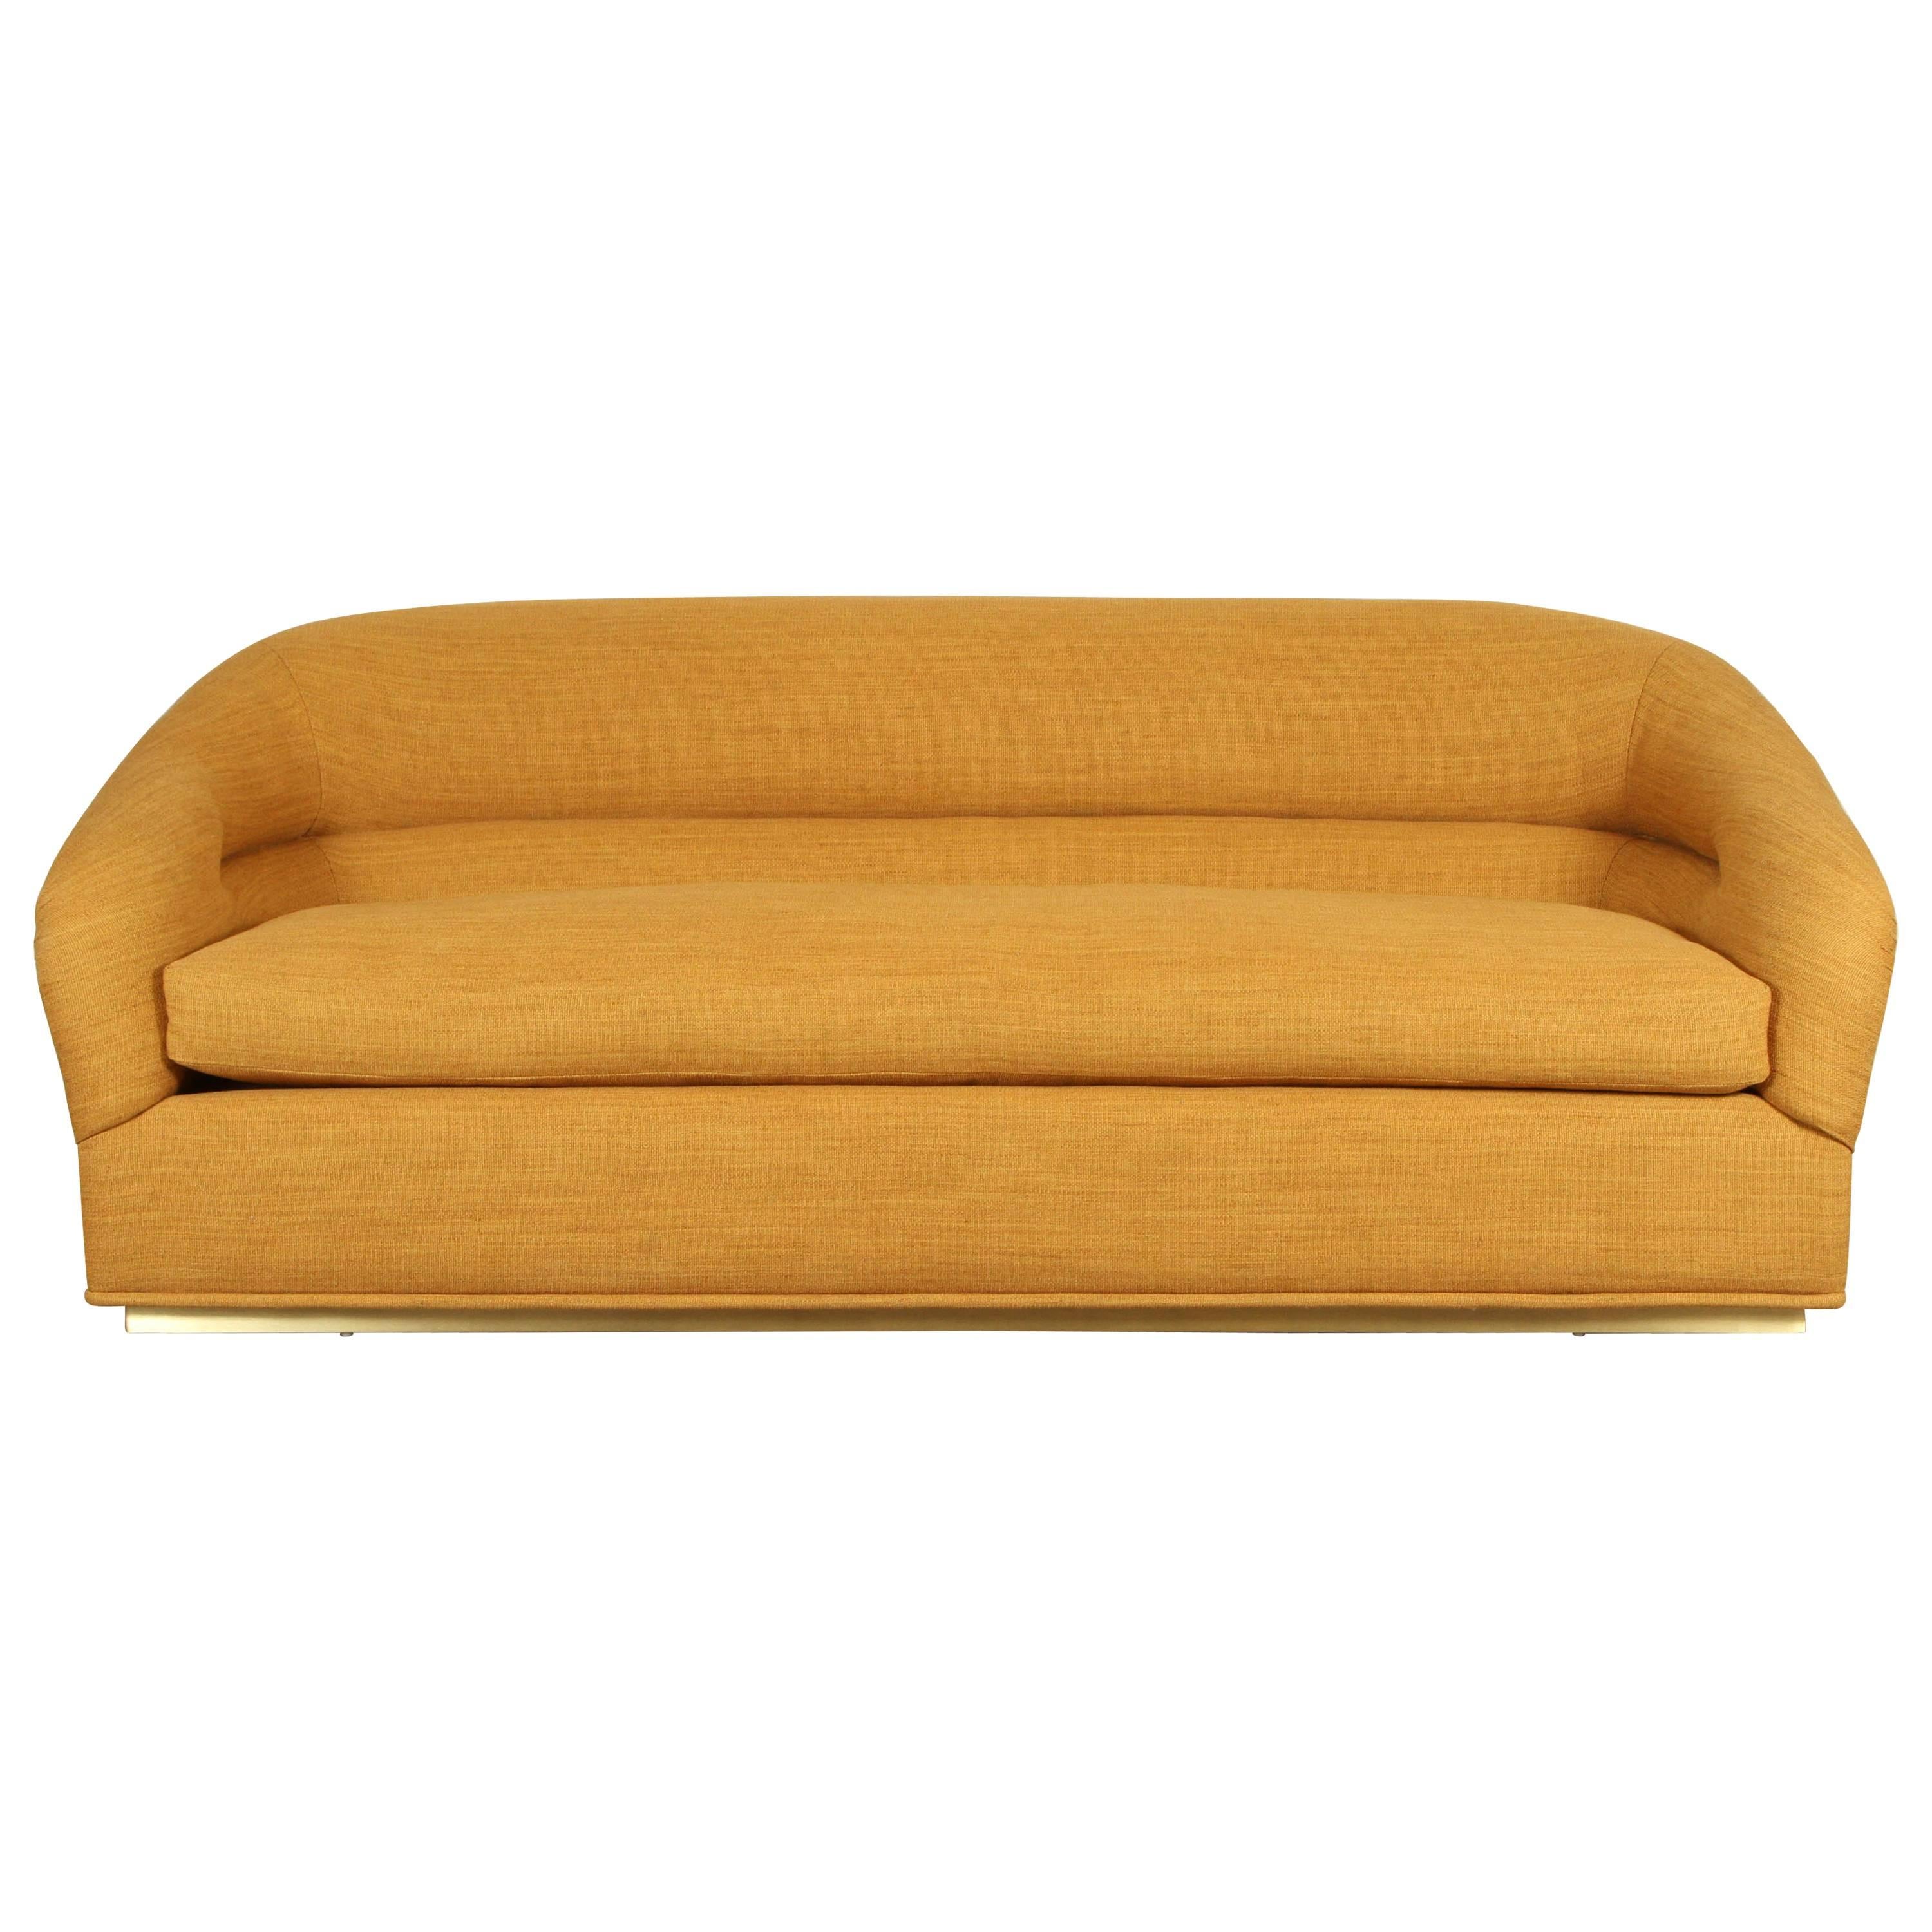 Huxley Sofa by Lawson-Fenning in Zak+ Fox Fabric